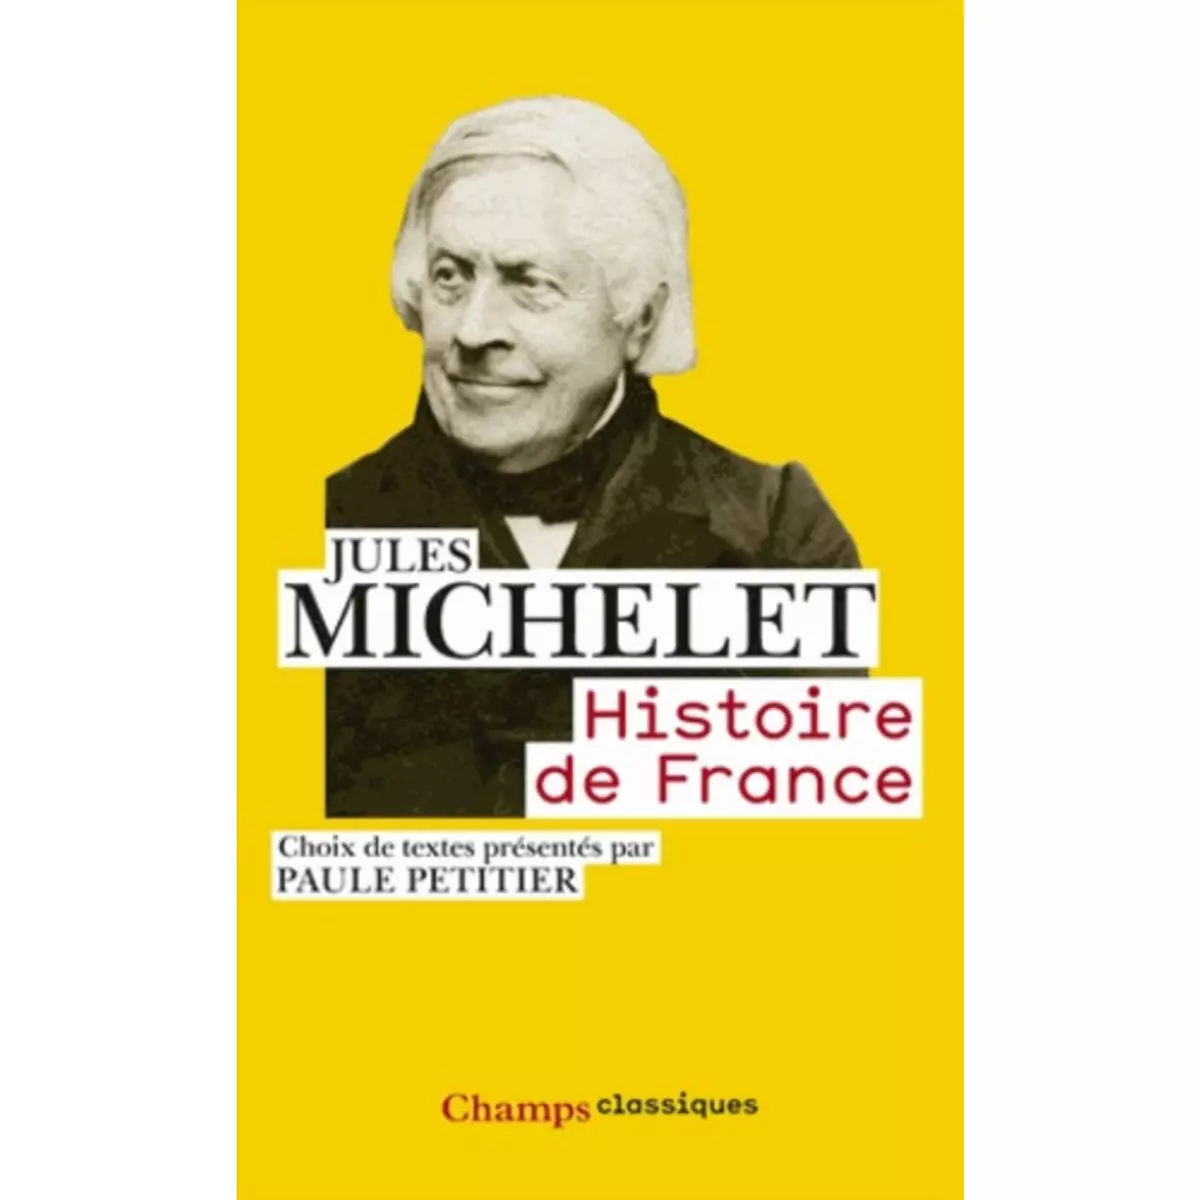  HISTOIRE DE FRANCE, Michelet Jules